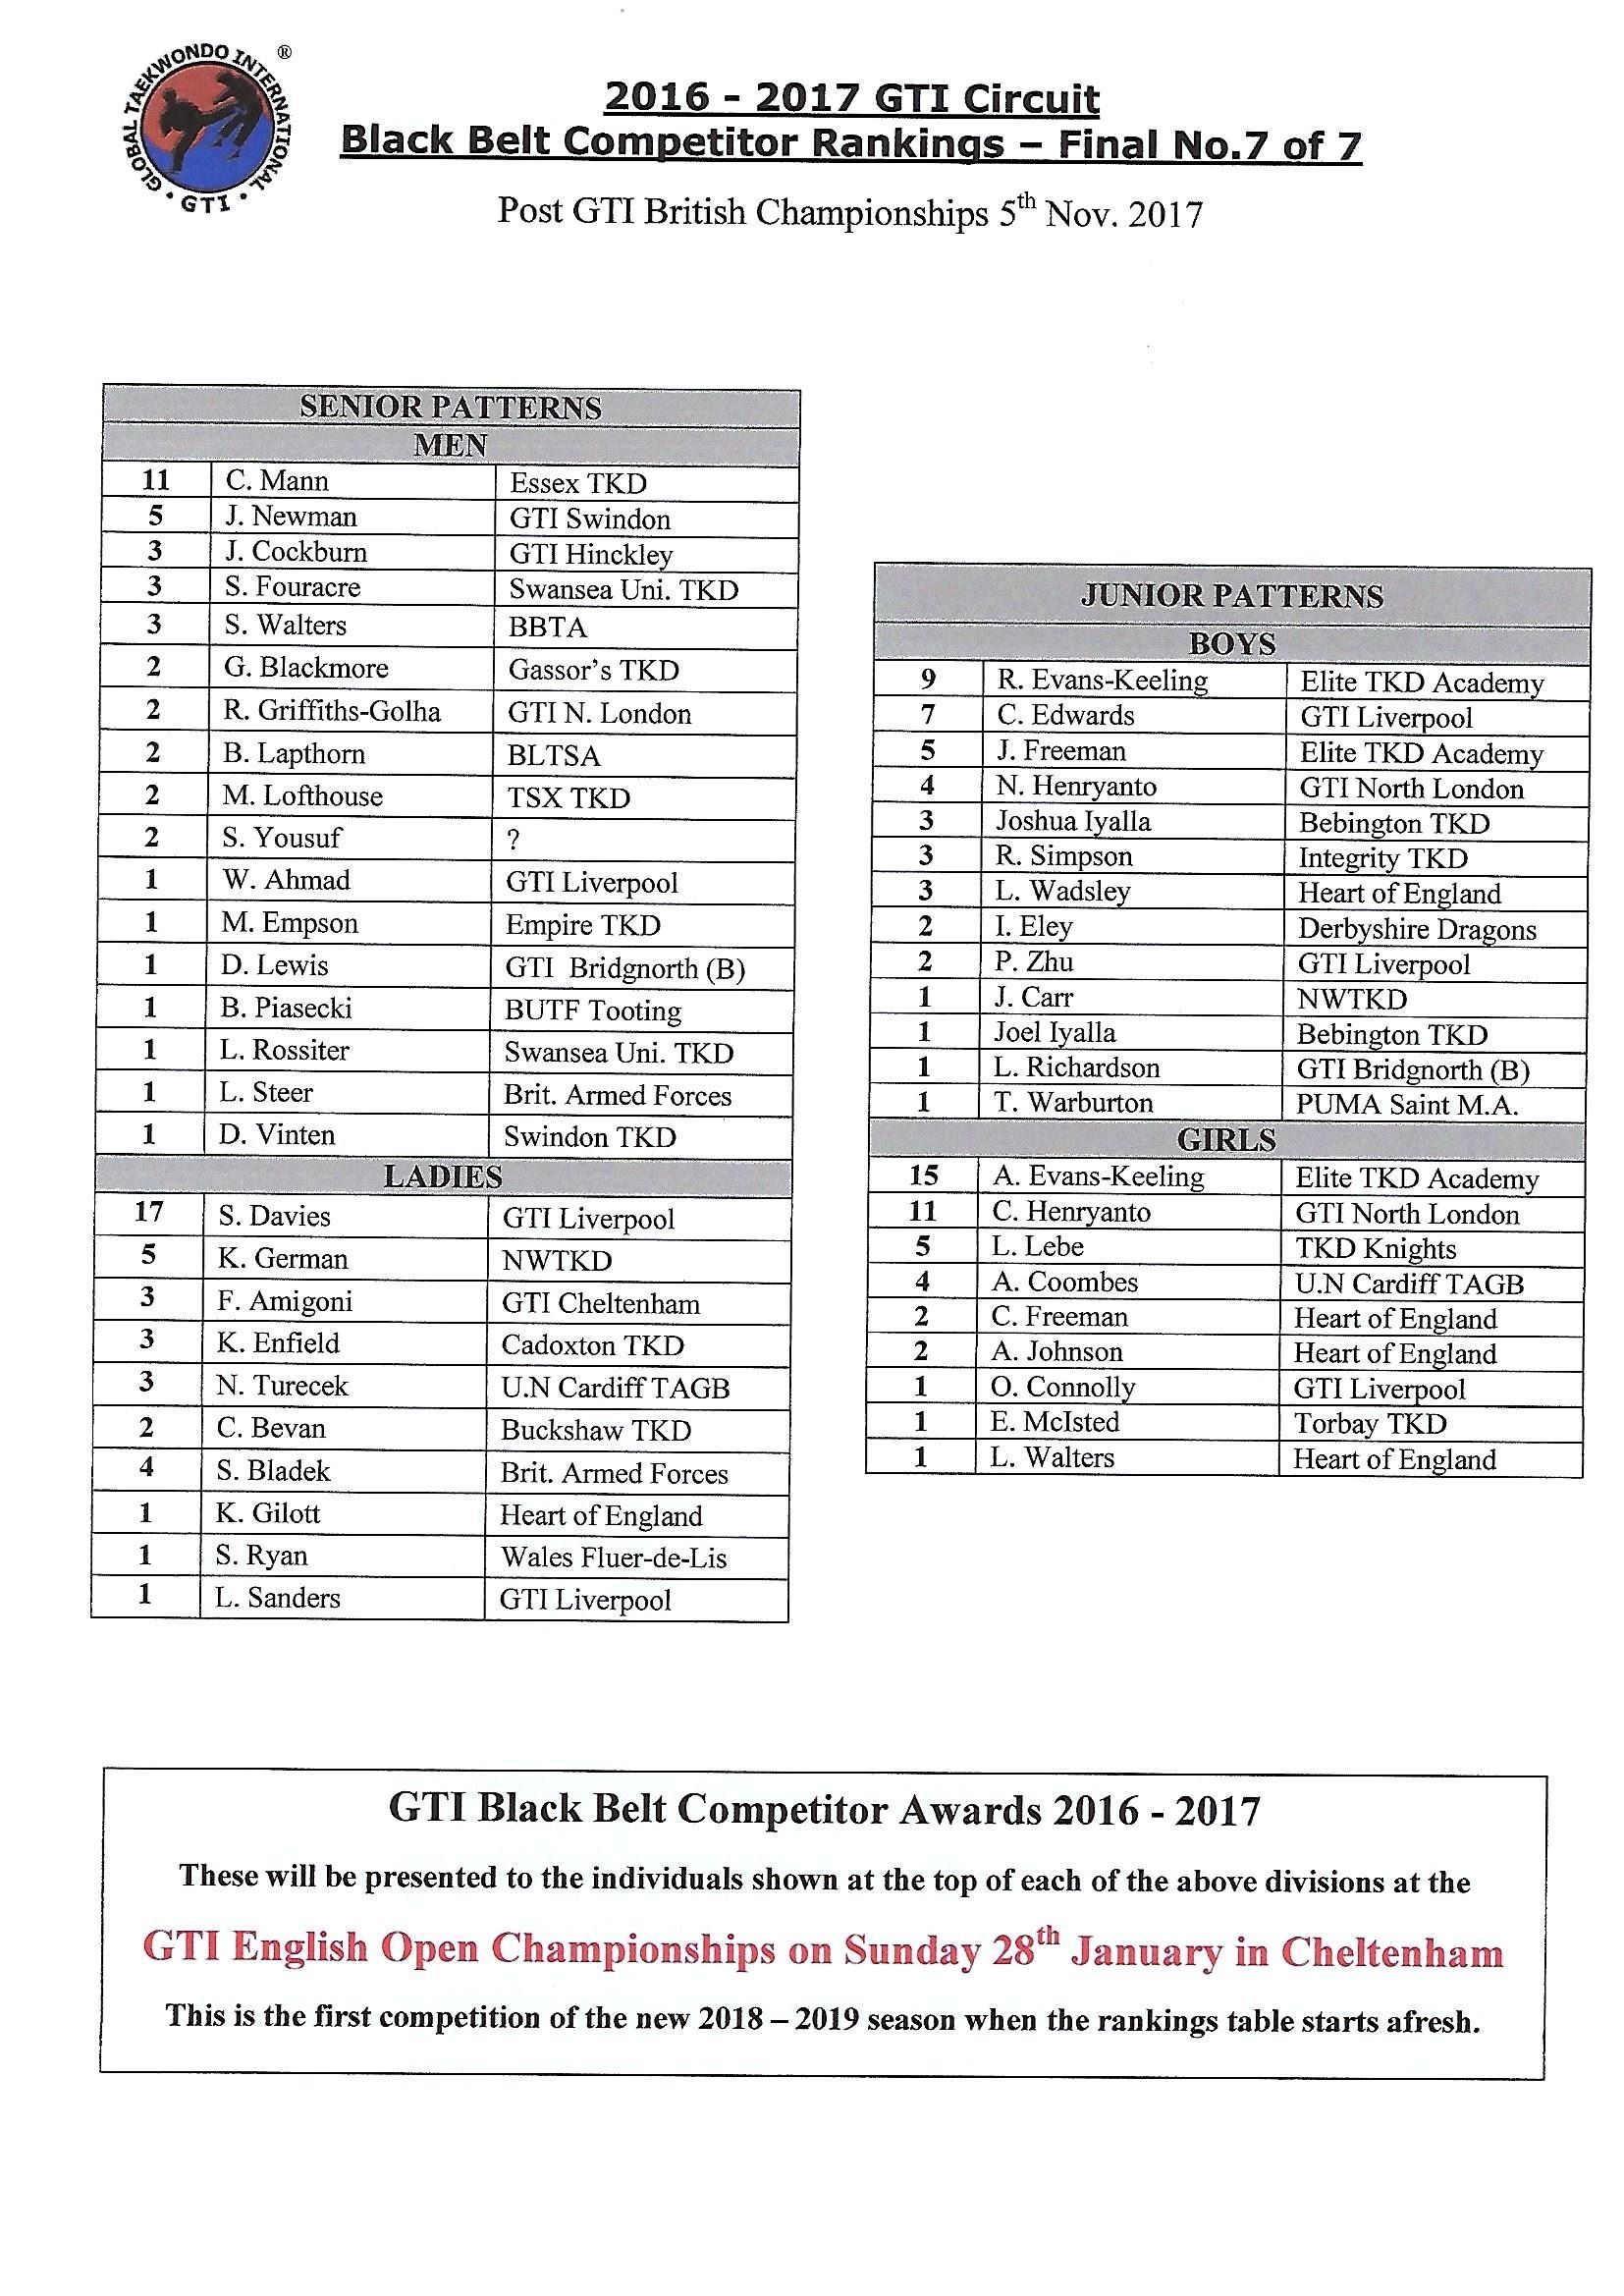 GTI black belt rankings page 3